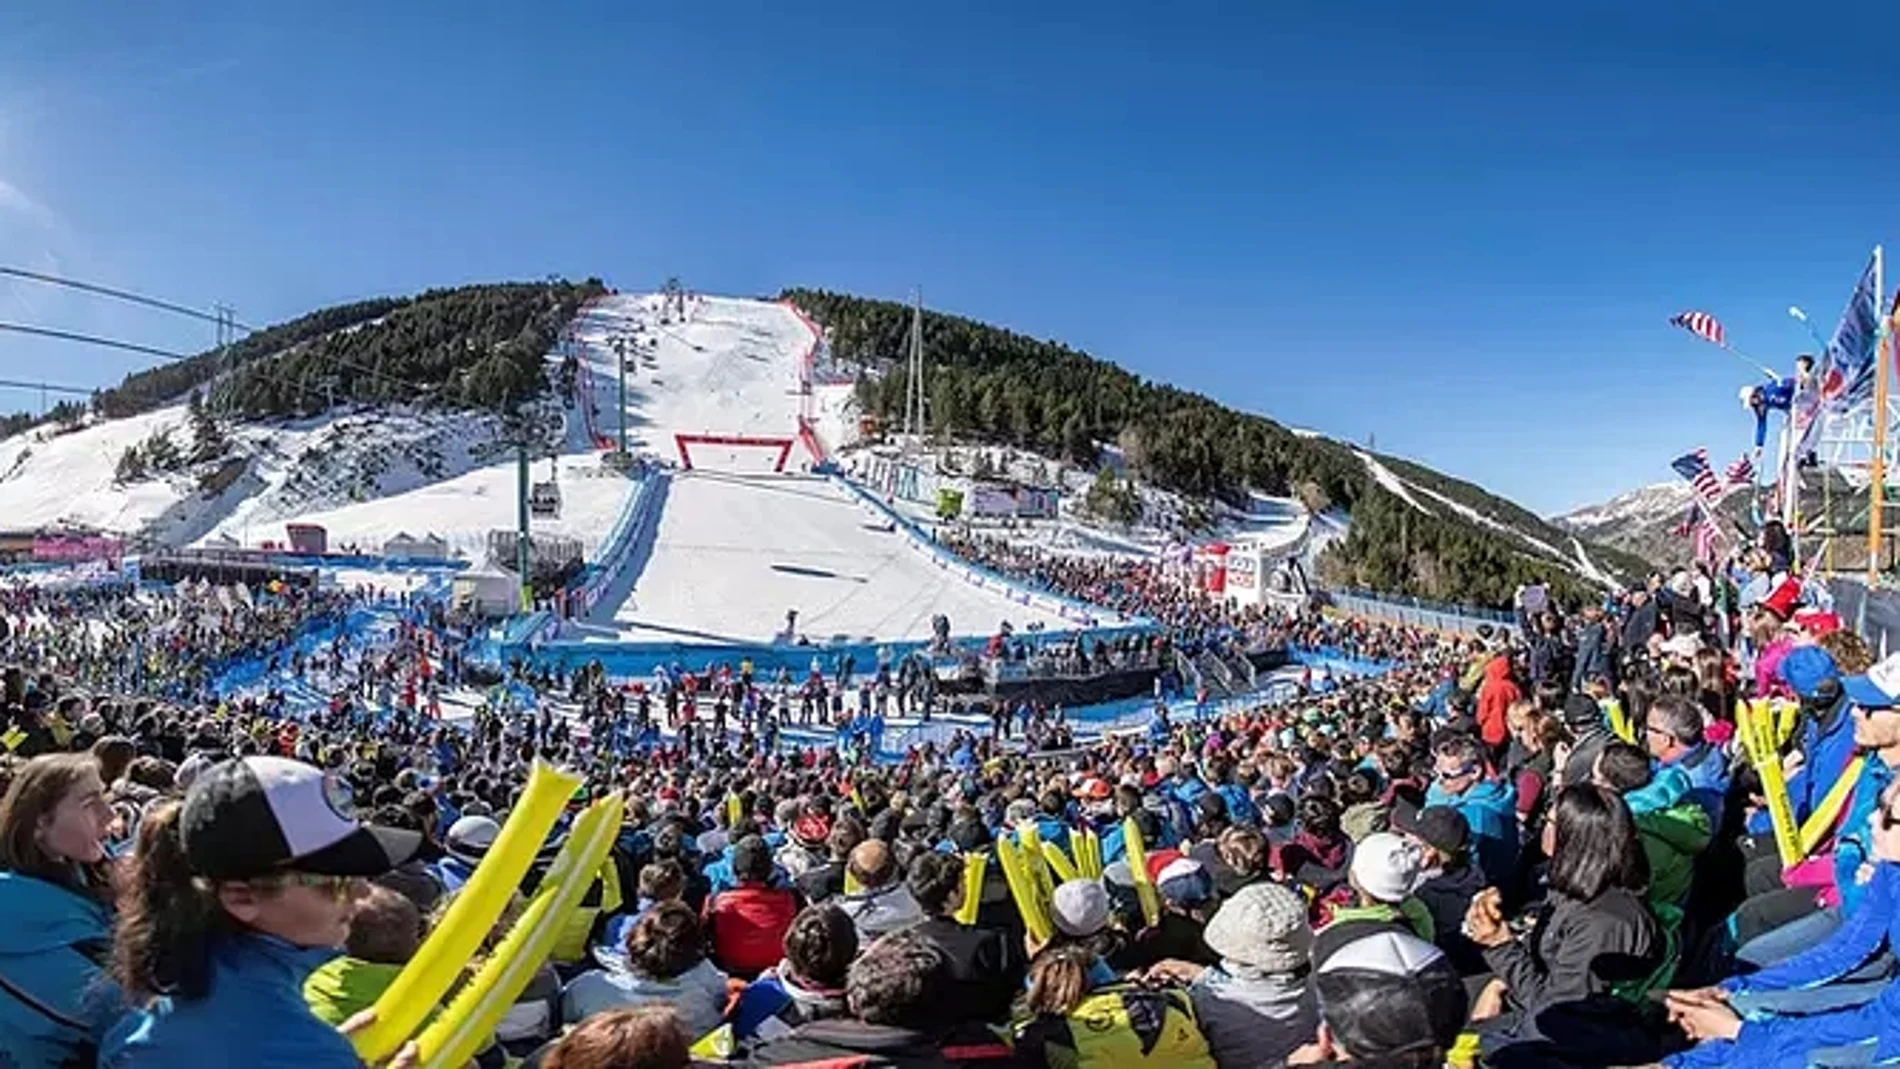 Soldeu El Tarter. Grandvalira (Andorra) Finales de la Copa del Mundo de Esquí Alpino 2019